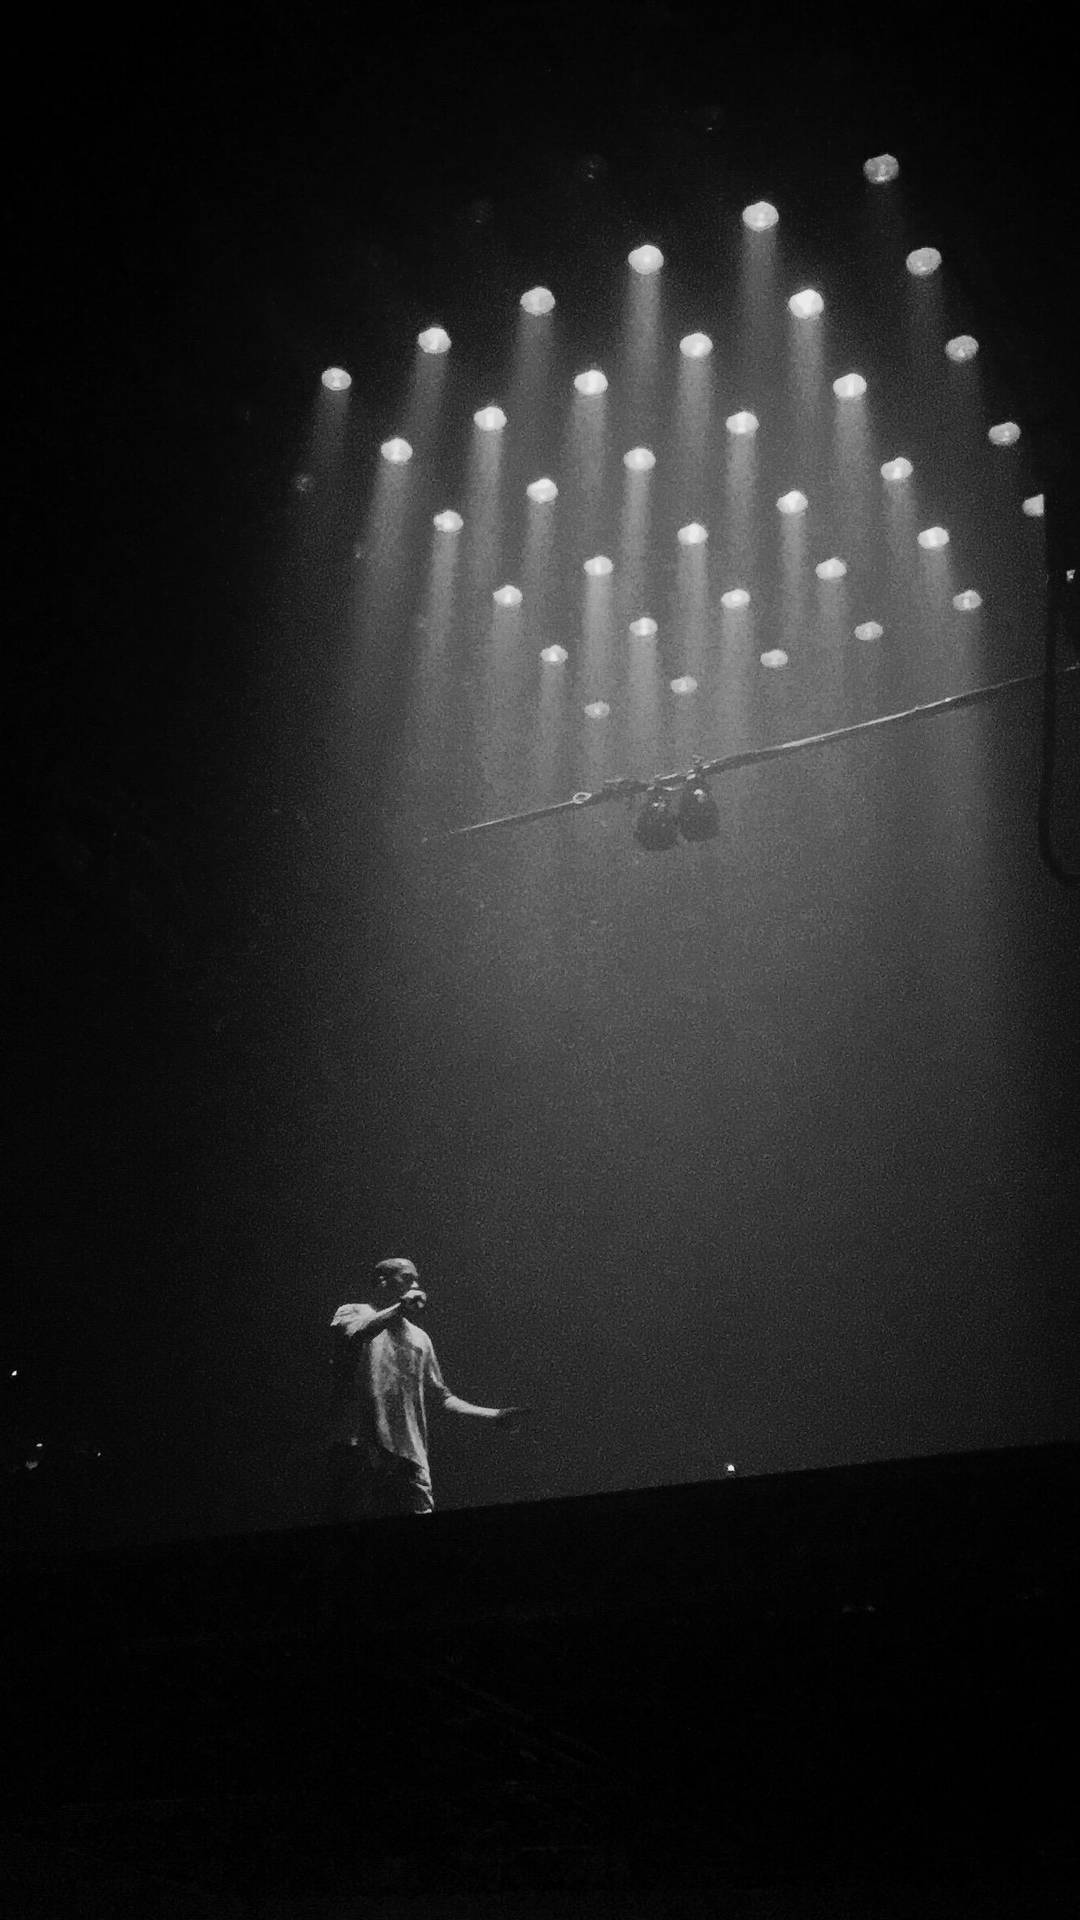 Kanye West Under Clustered Lights Background